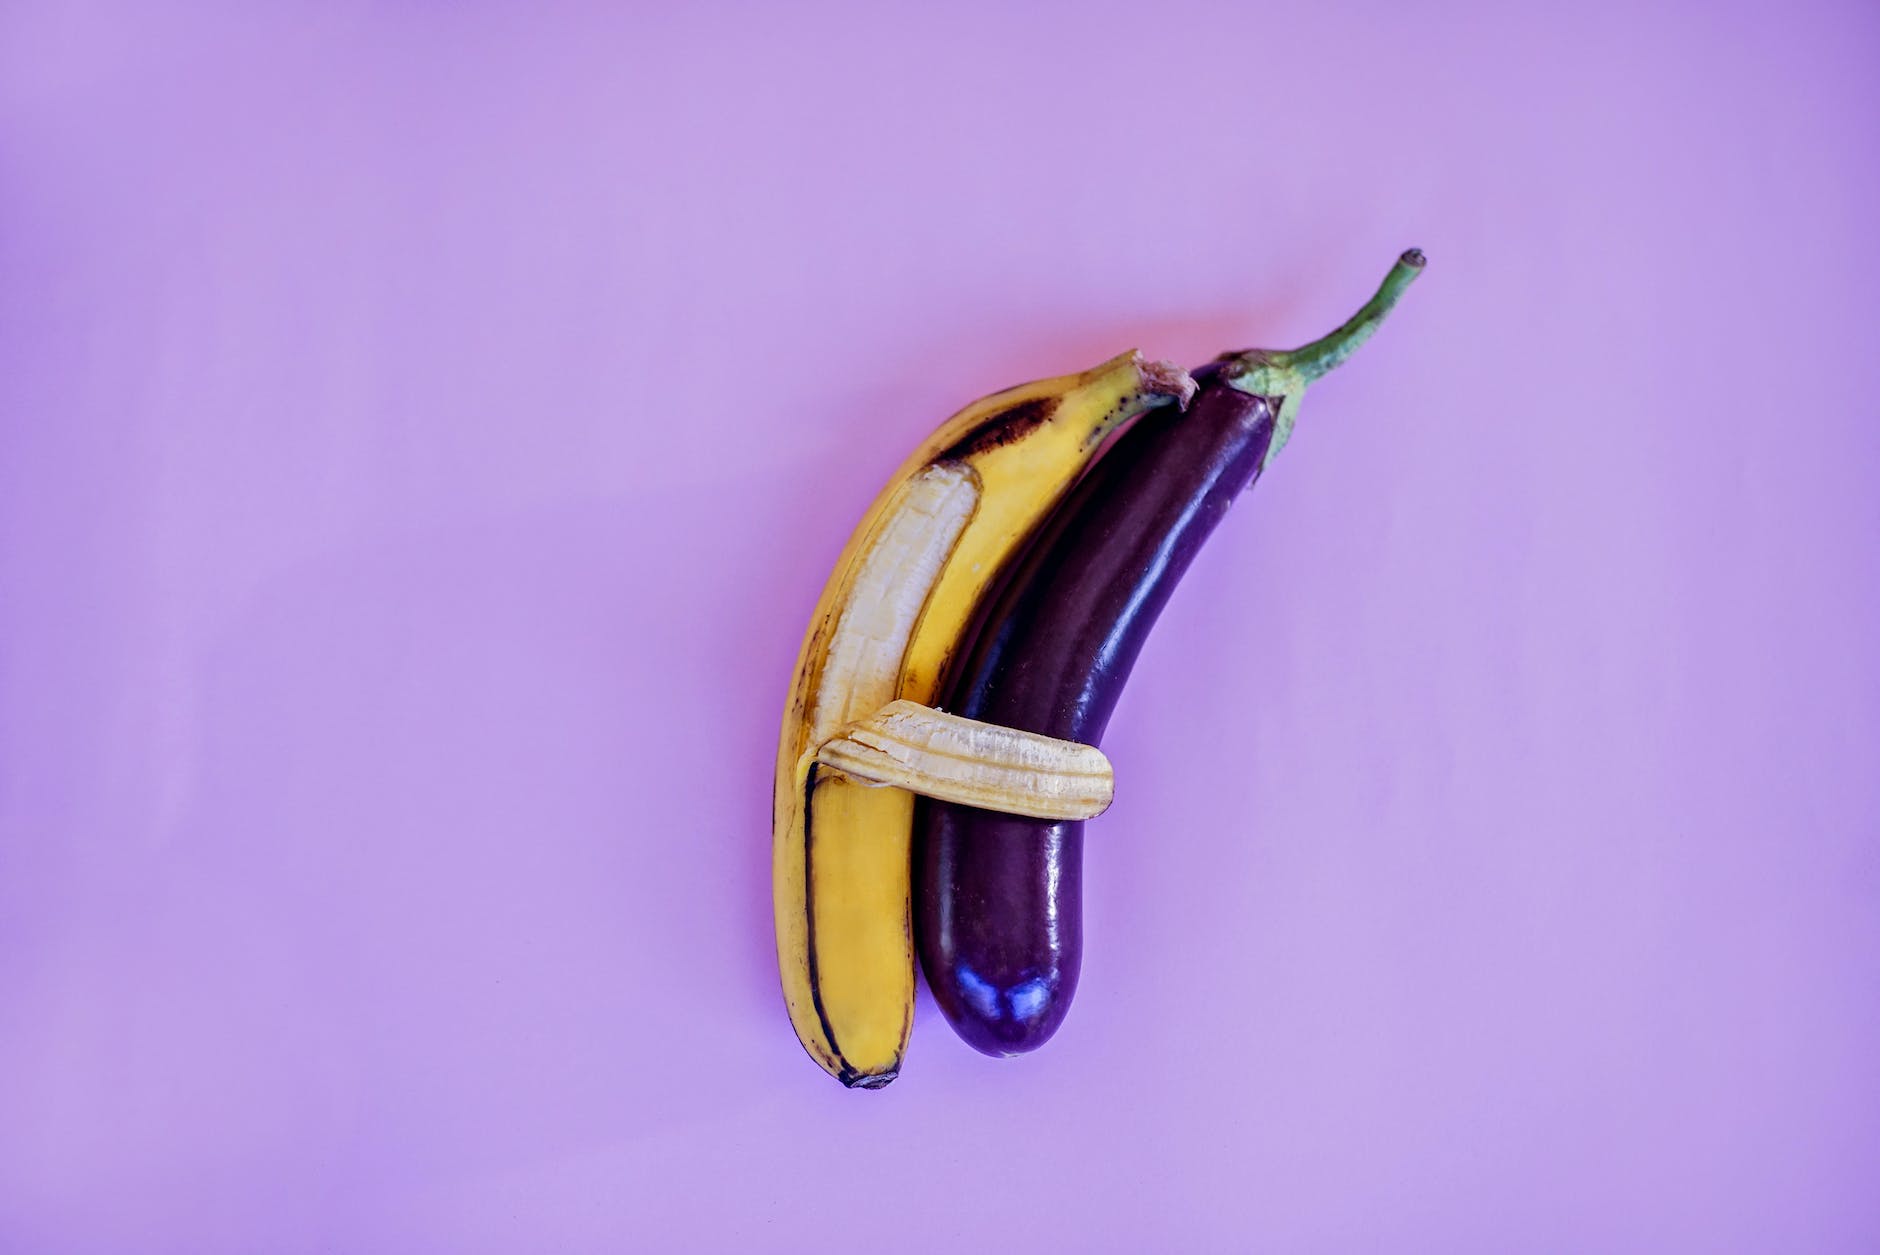 banana and eggplant on violet surface (sausage)